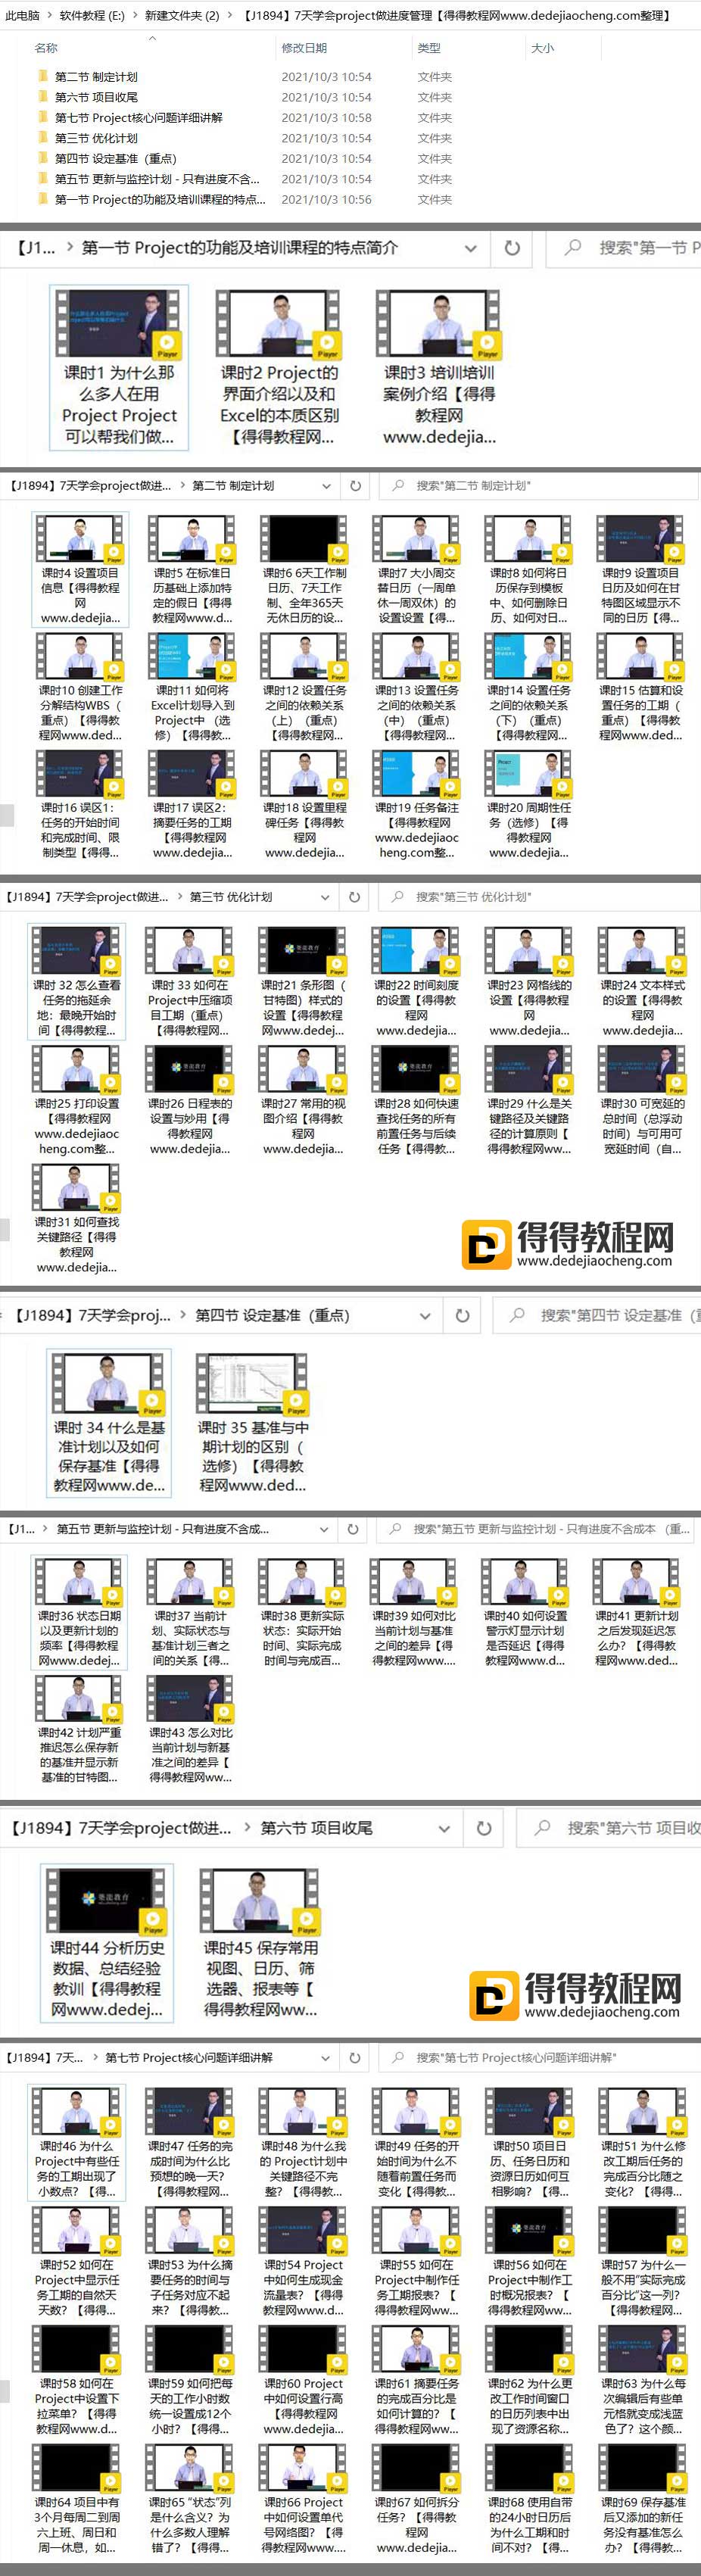 张连永【7天学会project做进度管理】-4.91G完结-百度云网盘下载